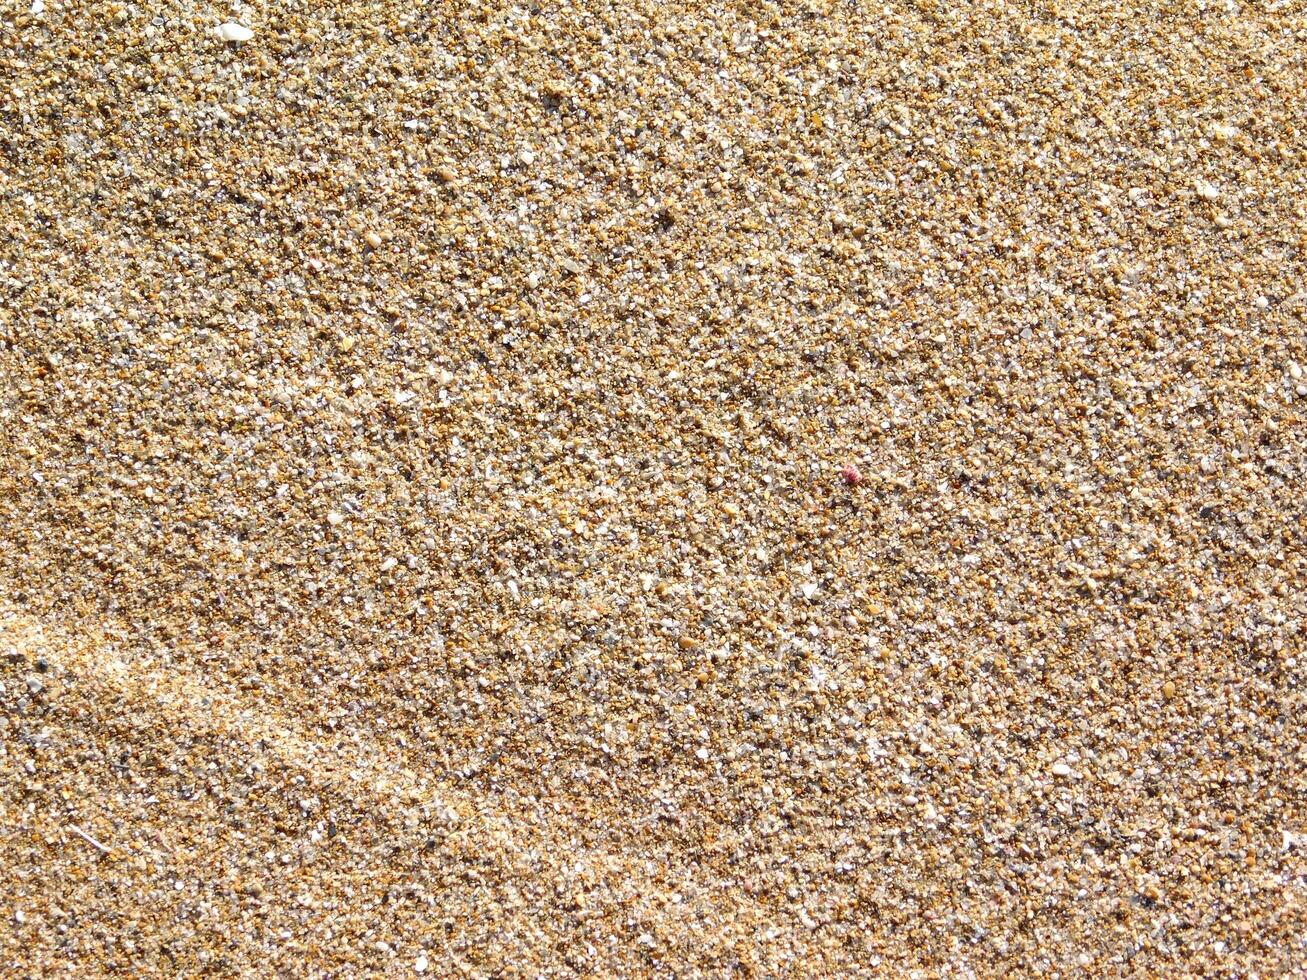 Sand Textur draussen foto